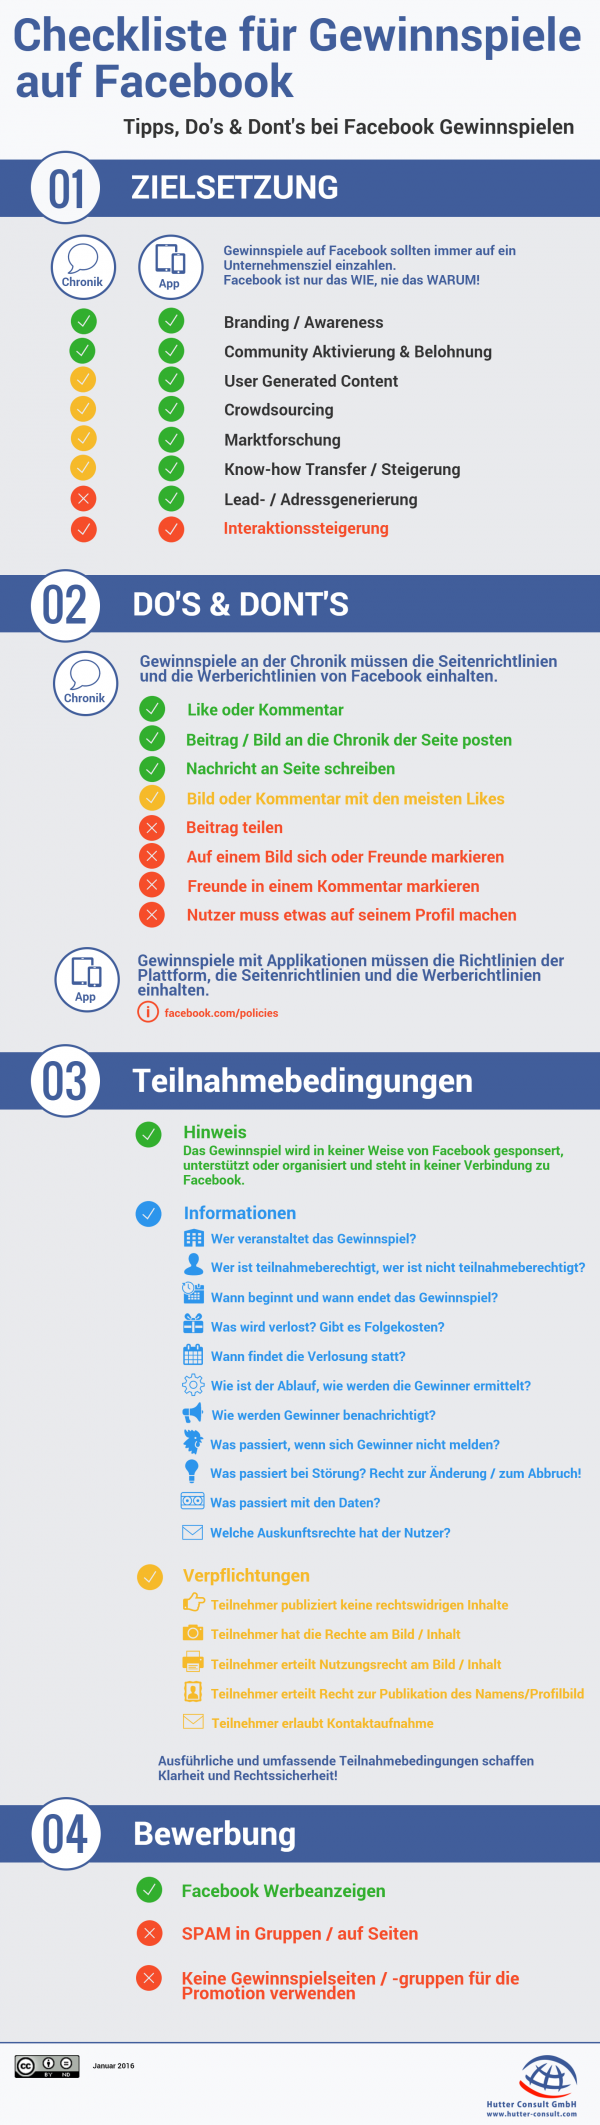 Checkliste für Gewinnspiele auf Facebook (Quelle: Hutter Consult GmbH)